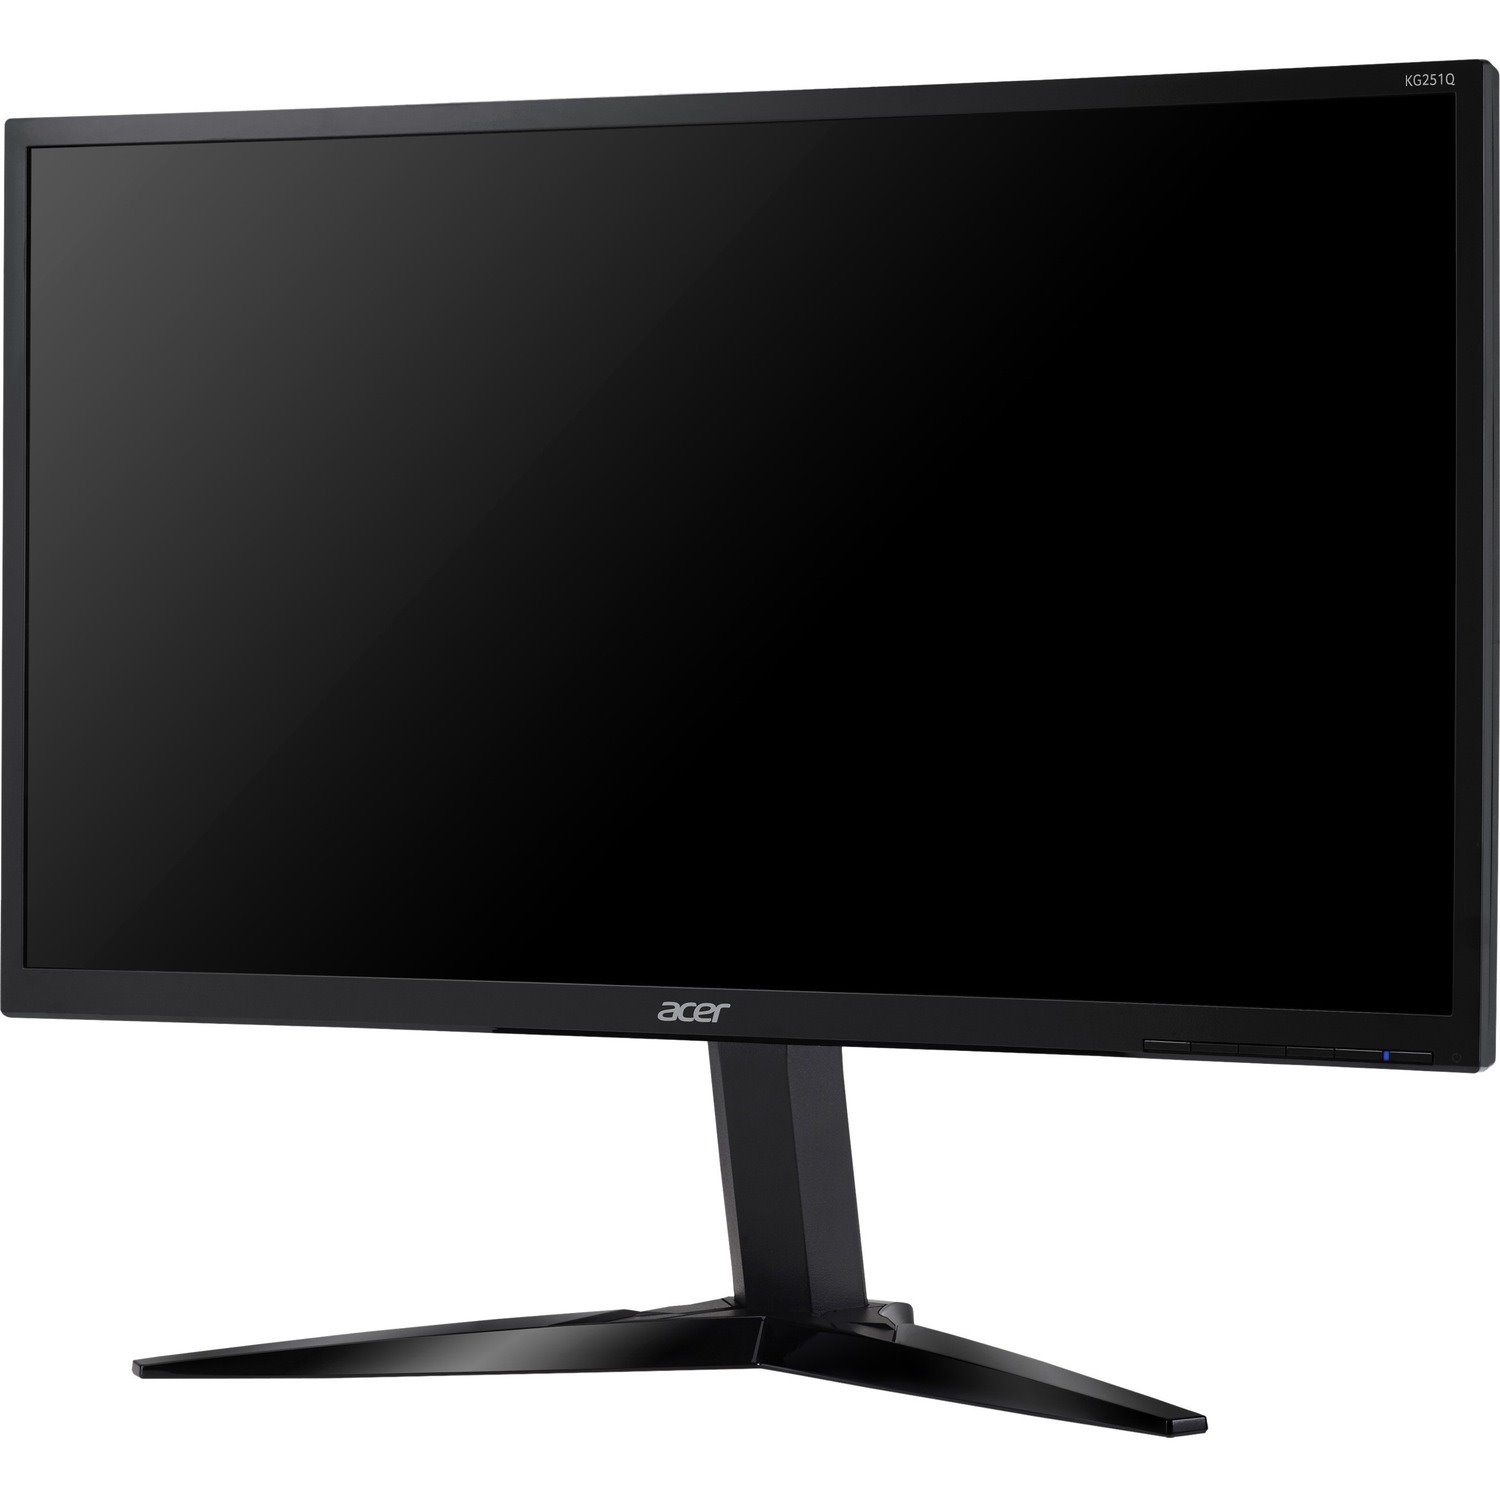 Acer KG251Q 24.5" Full HD LED LCD Monitor - 16:9 - Black